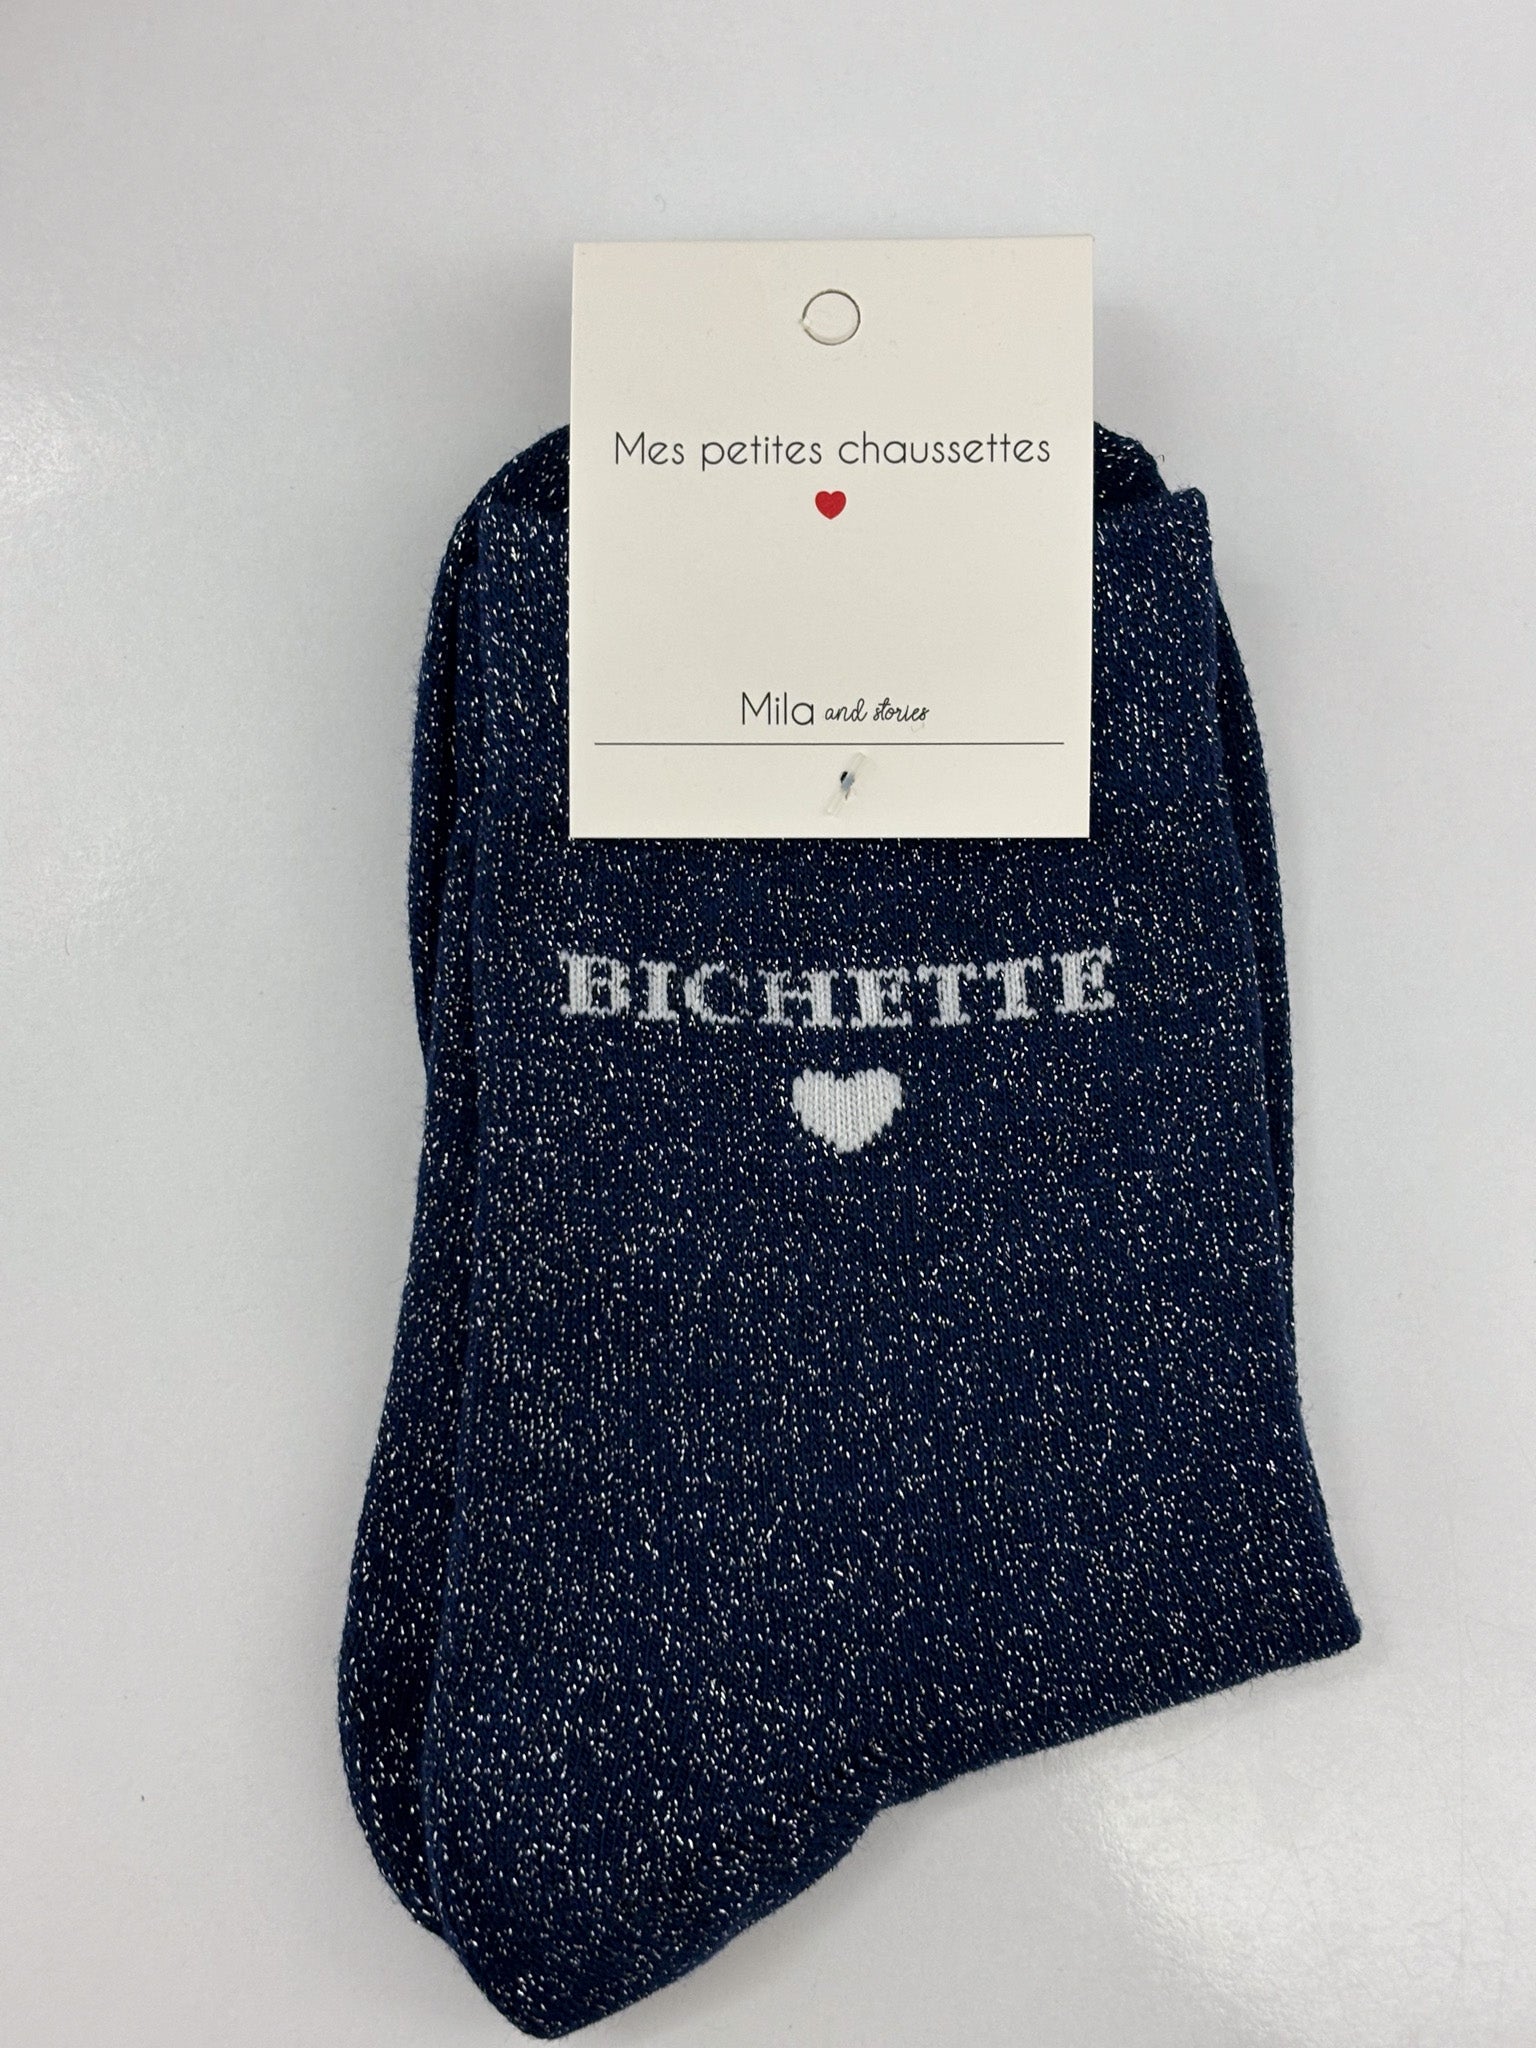 Chaussettes femme paillettes Bichette